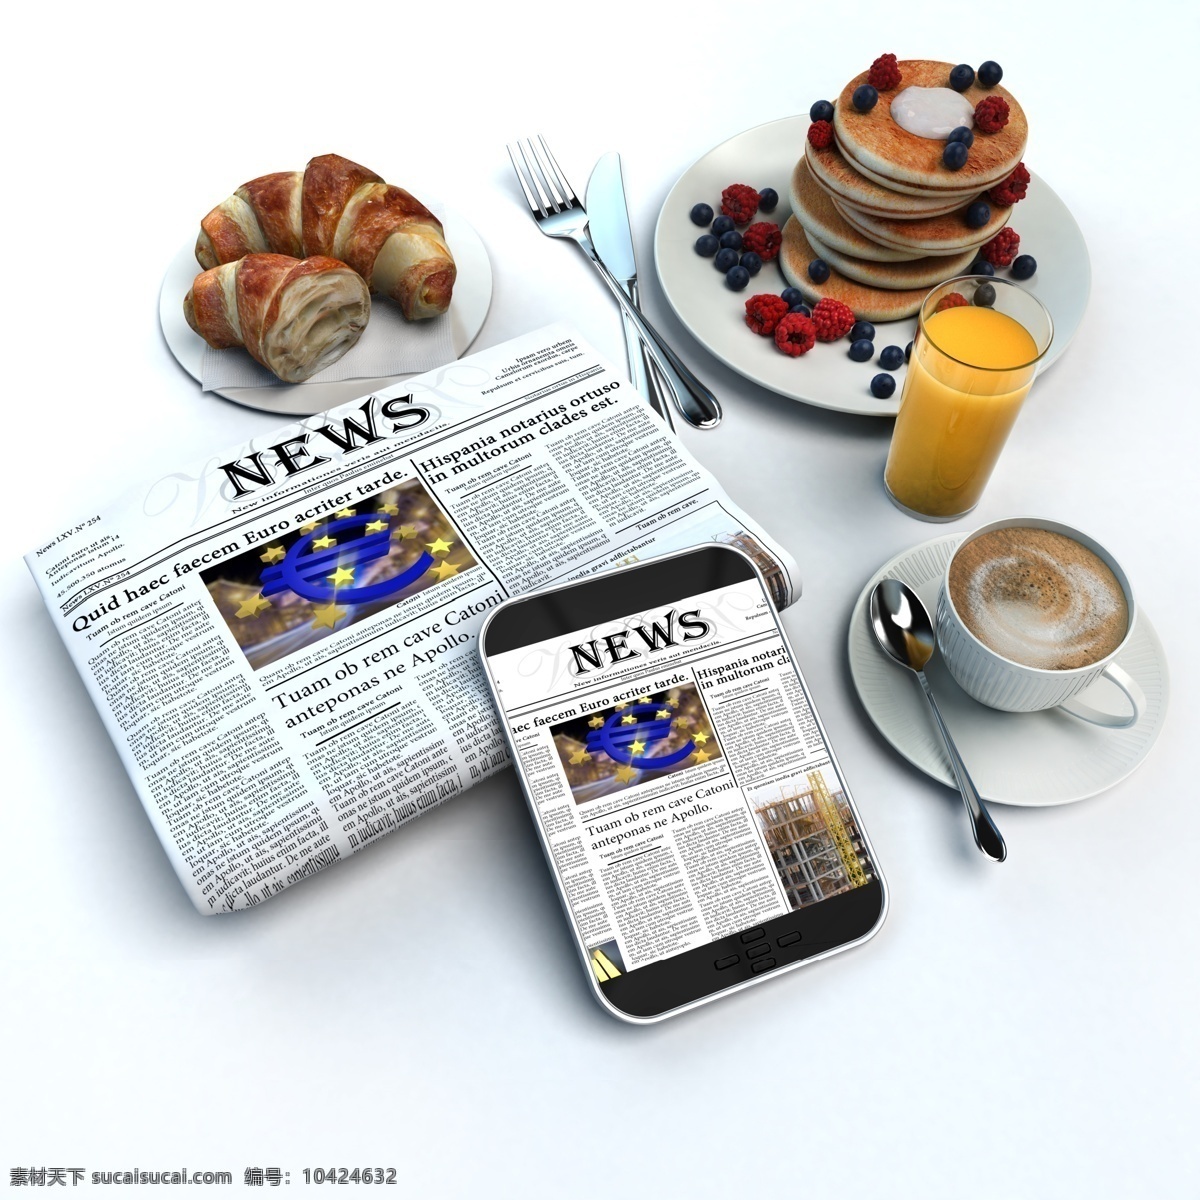 报纸 智能 手机 美食 智能手机 咖啡 橙汁 面饼 面包 蓝莓 覆盆子 现代商务 商务金融